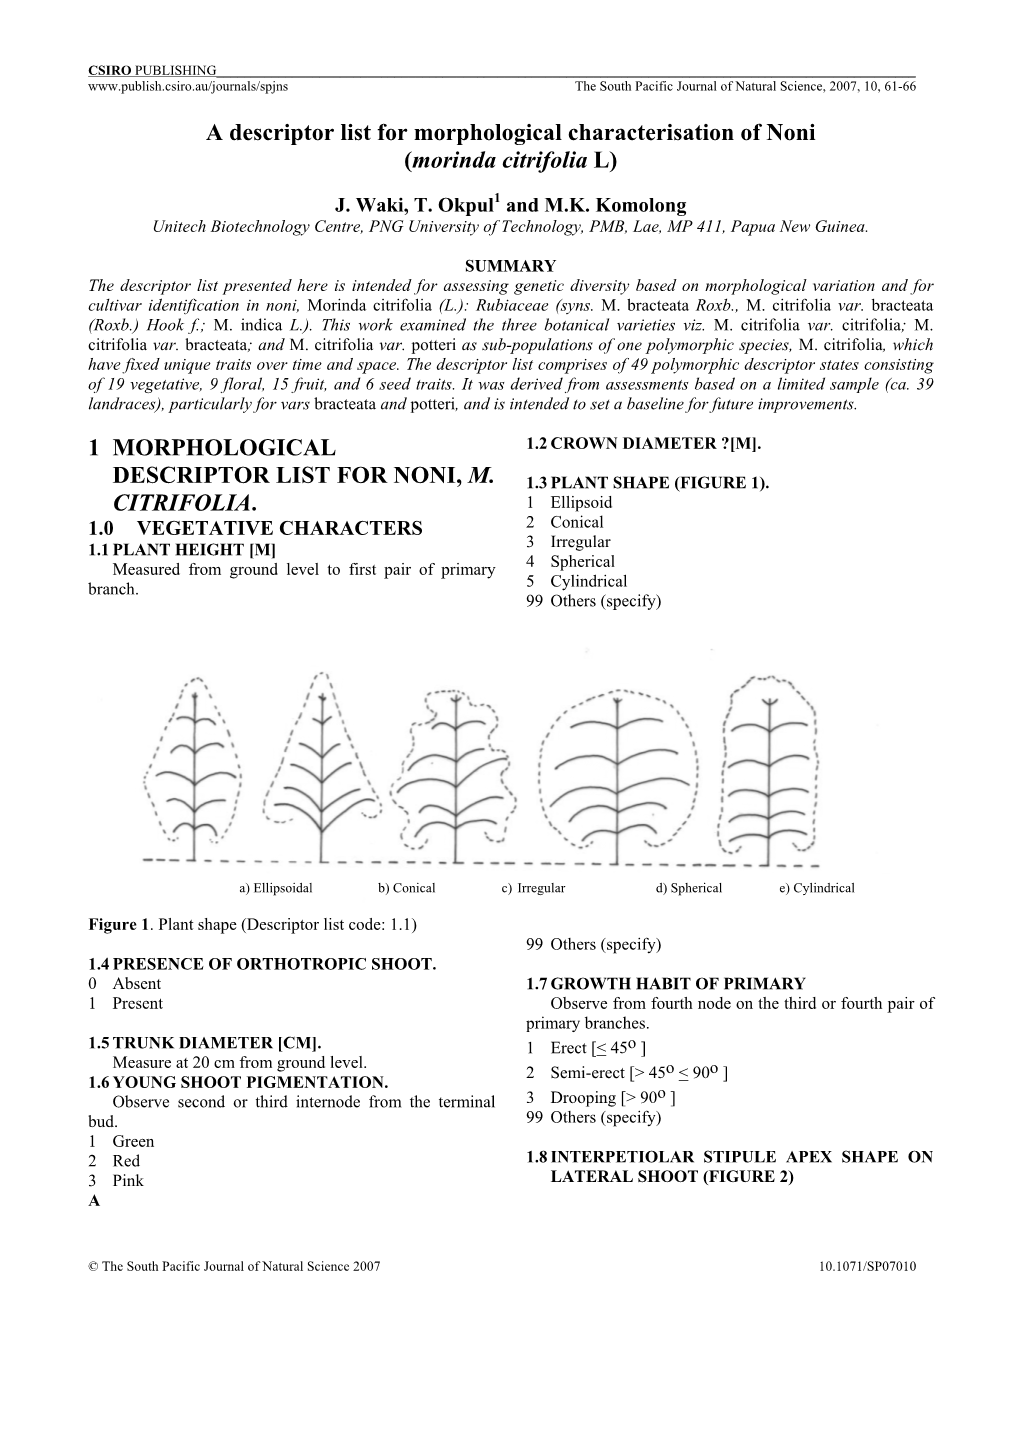 The Descriptor List for Characterization of Noni (Morinda Citrifolia L